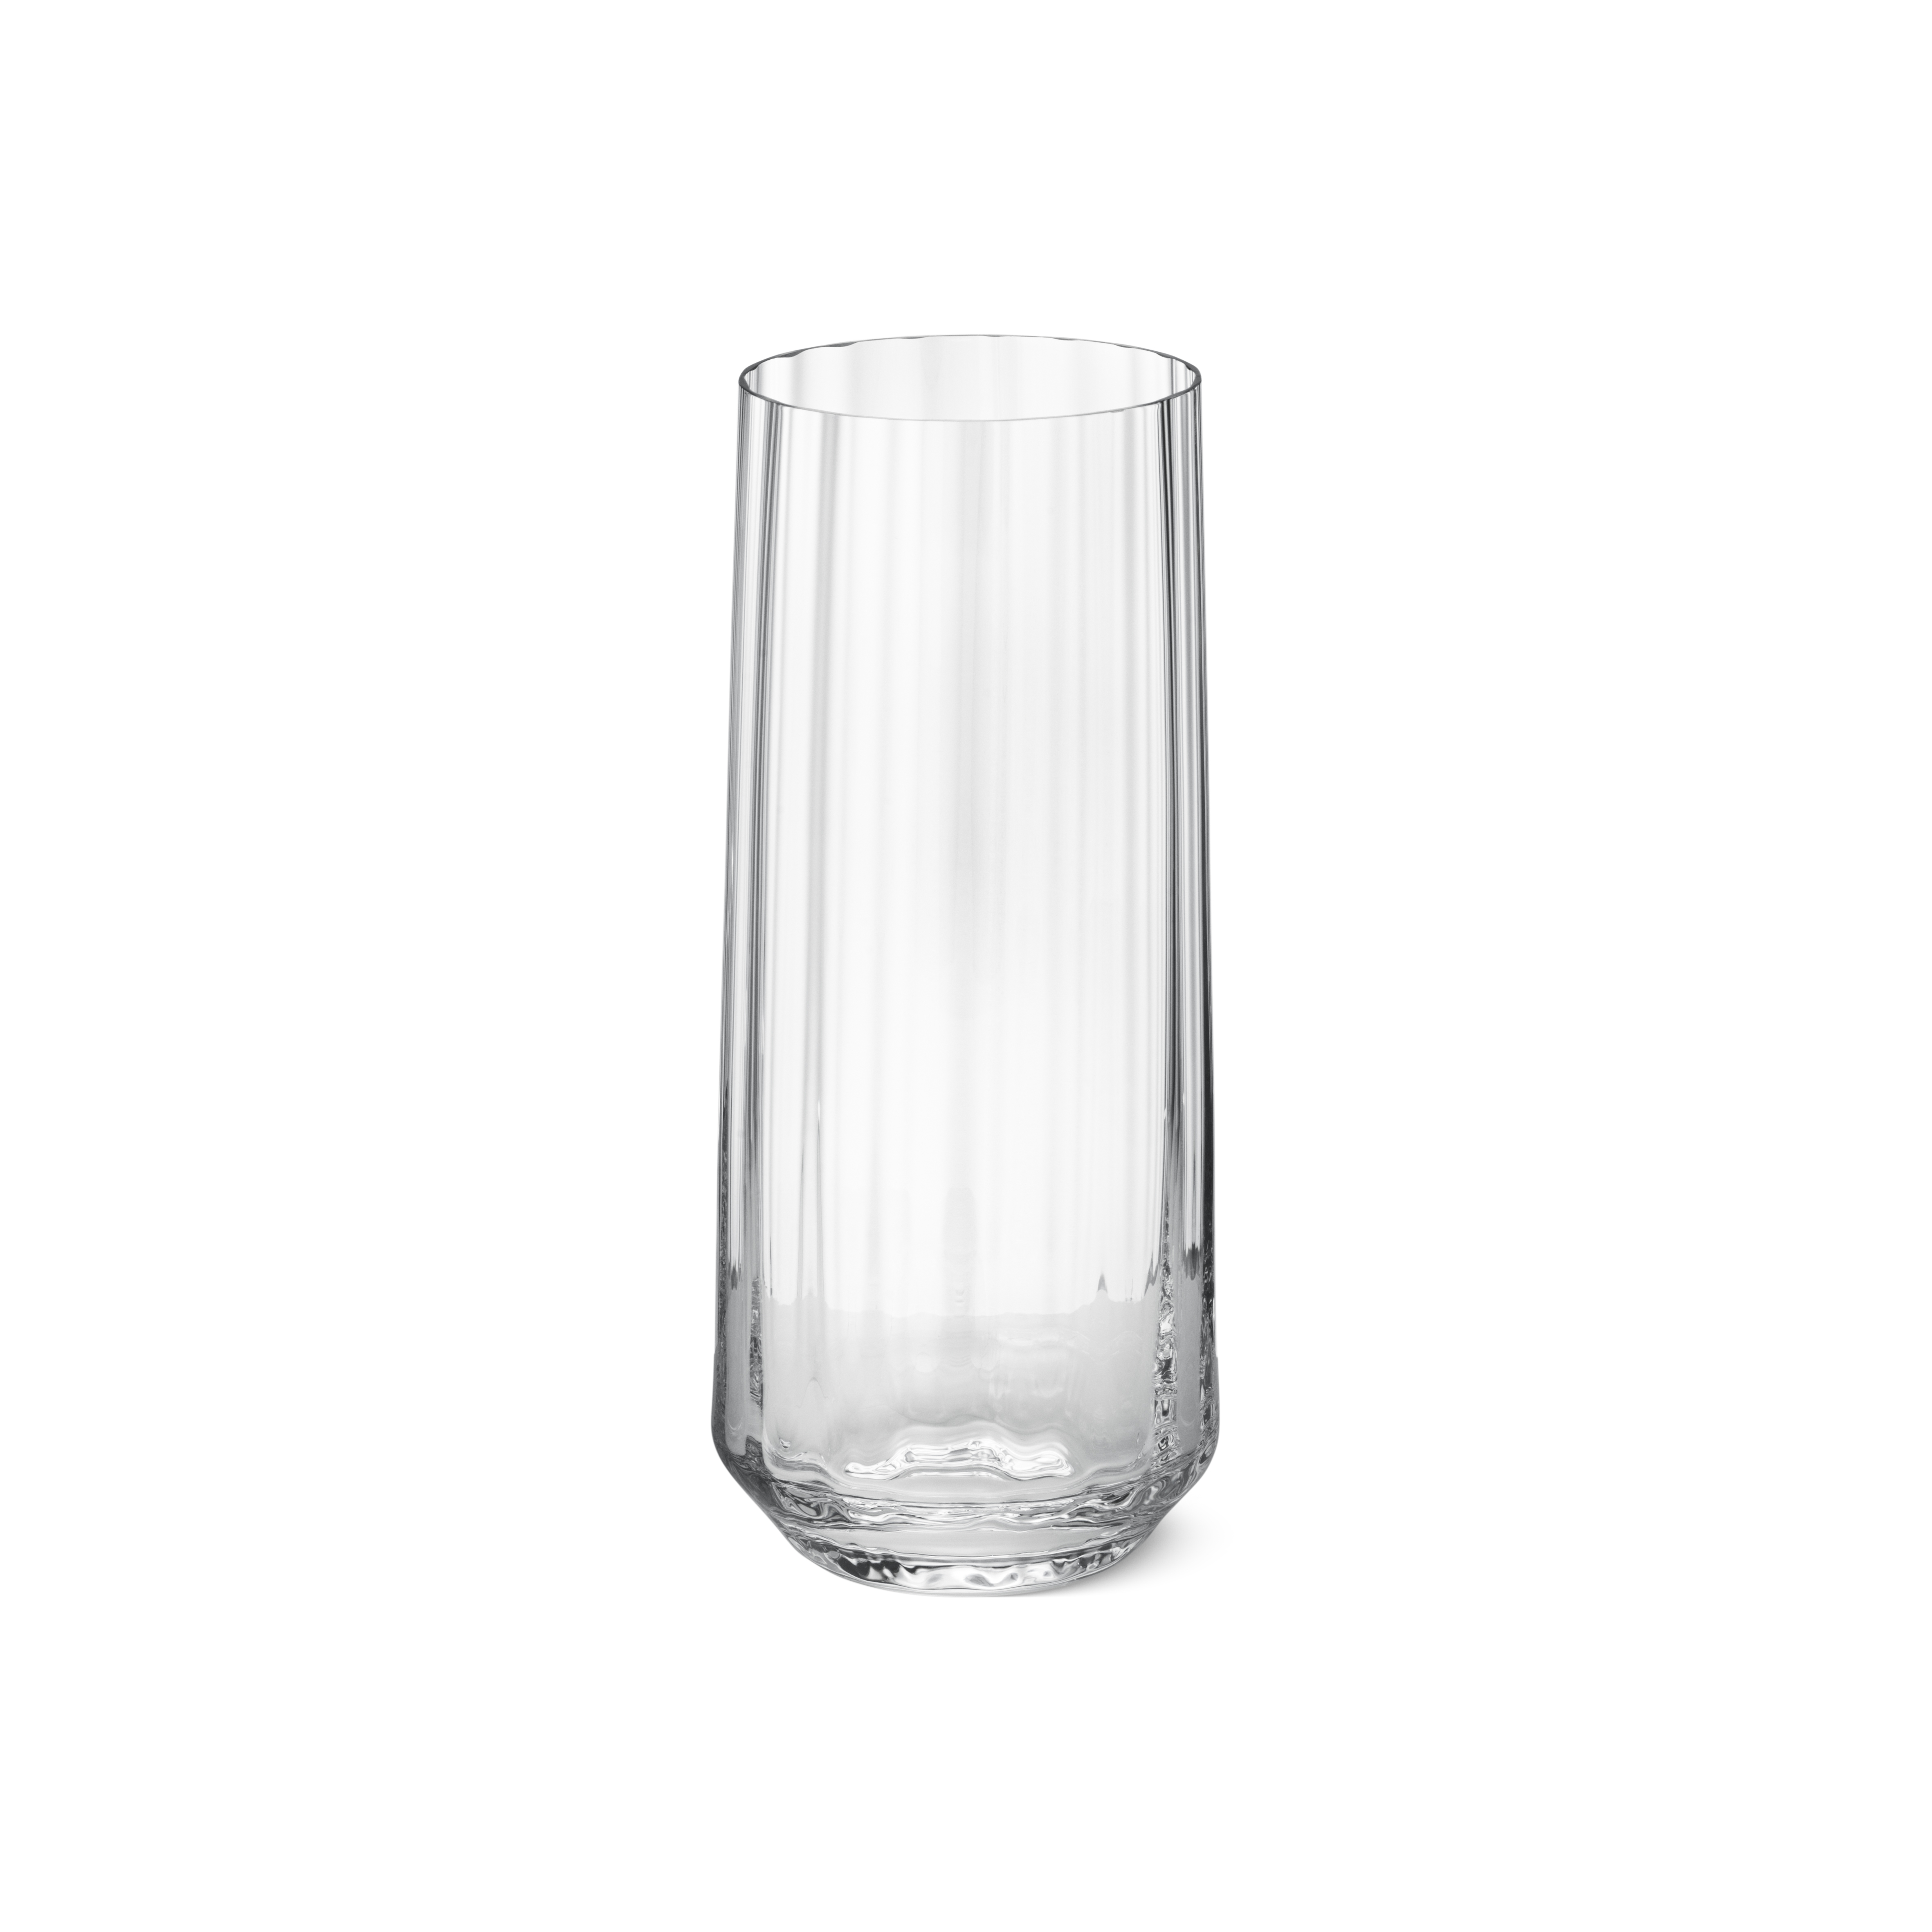 Bernadotte Highball Glass, Crystalline 45 Cl, 6 pcs Georg Jensen